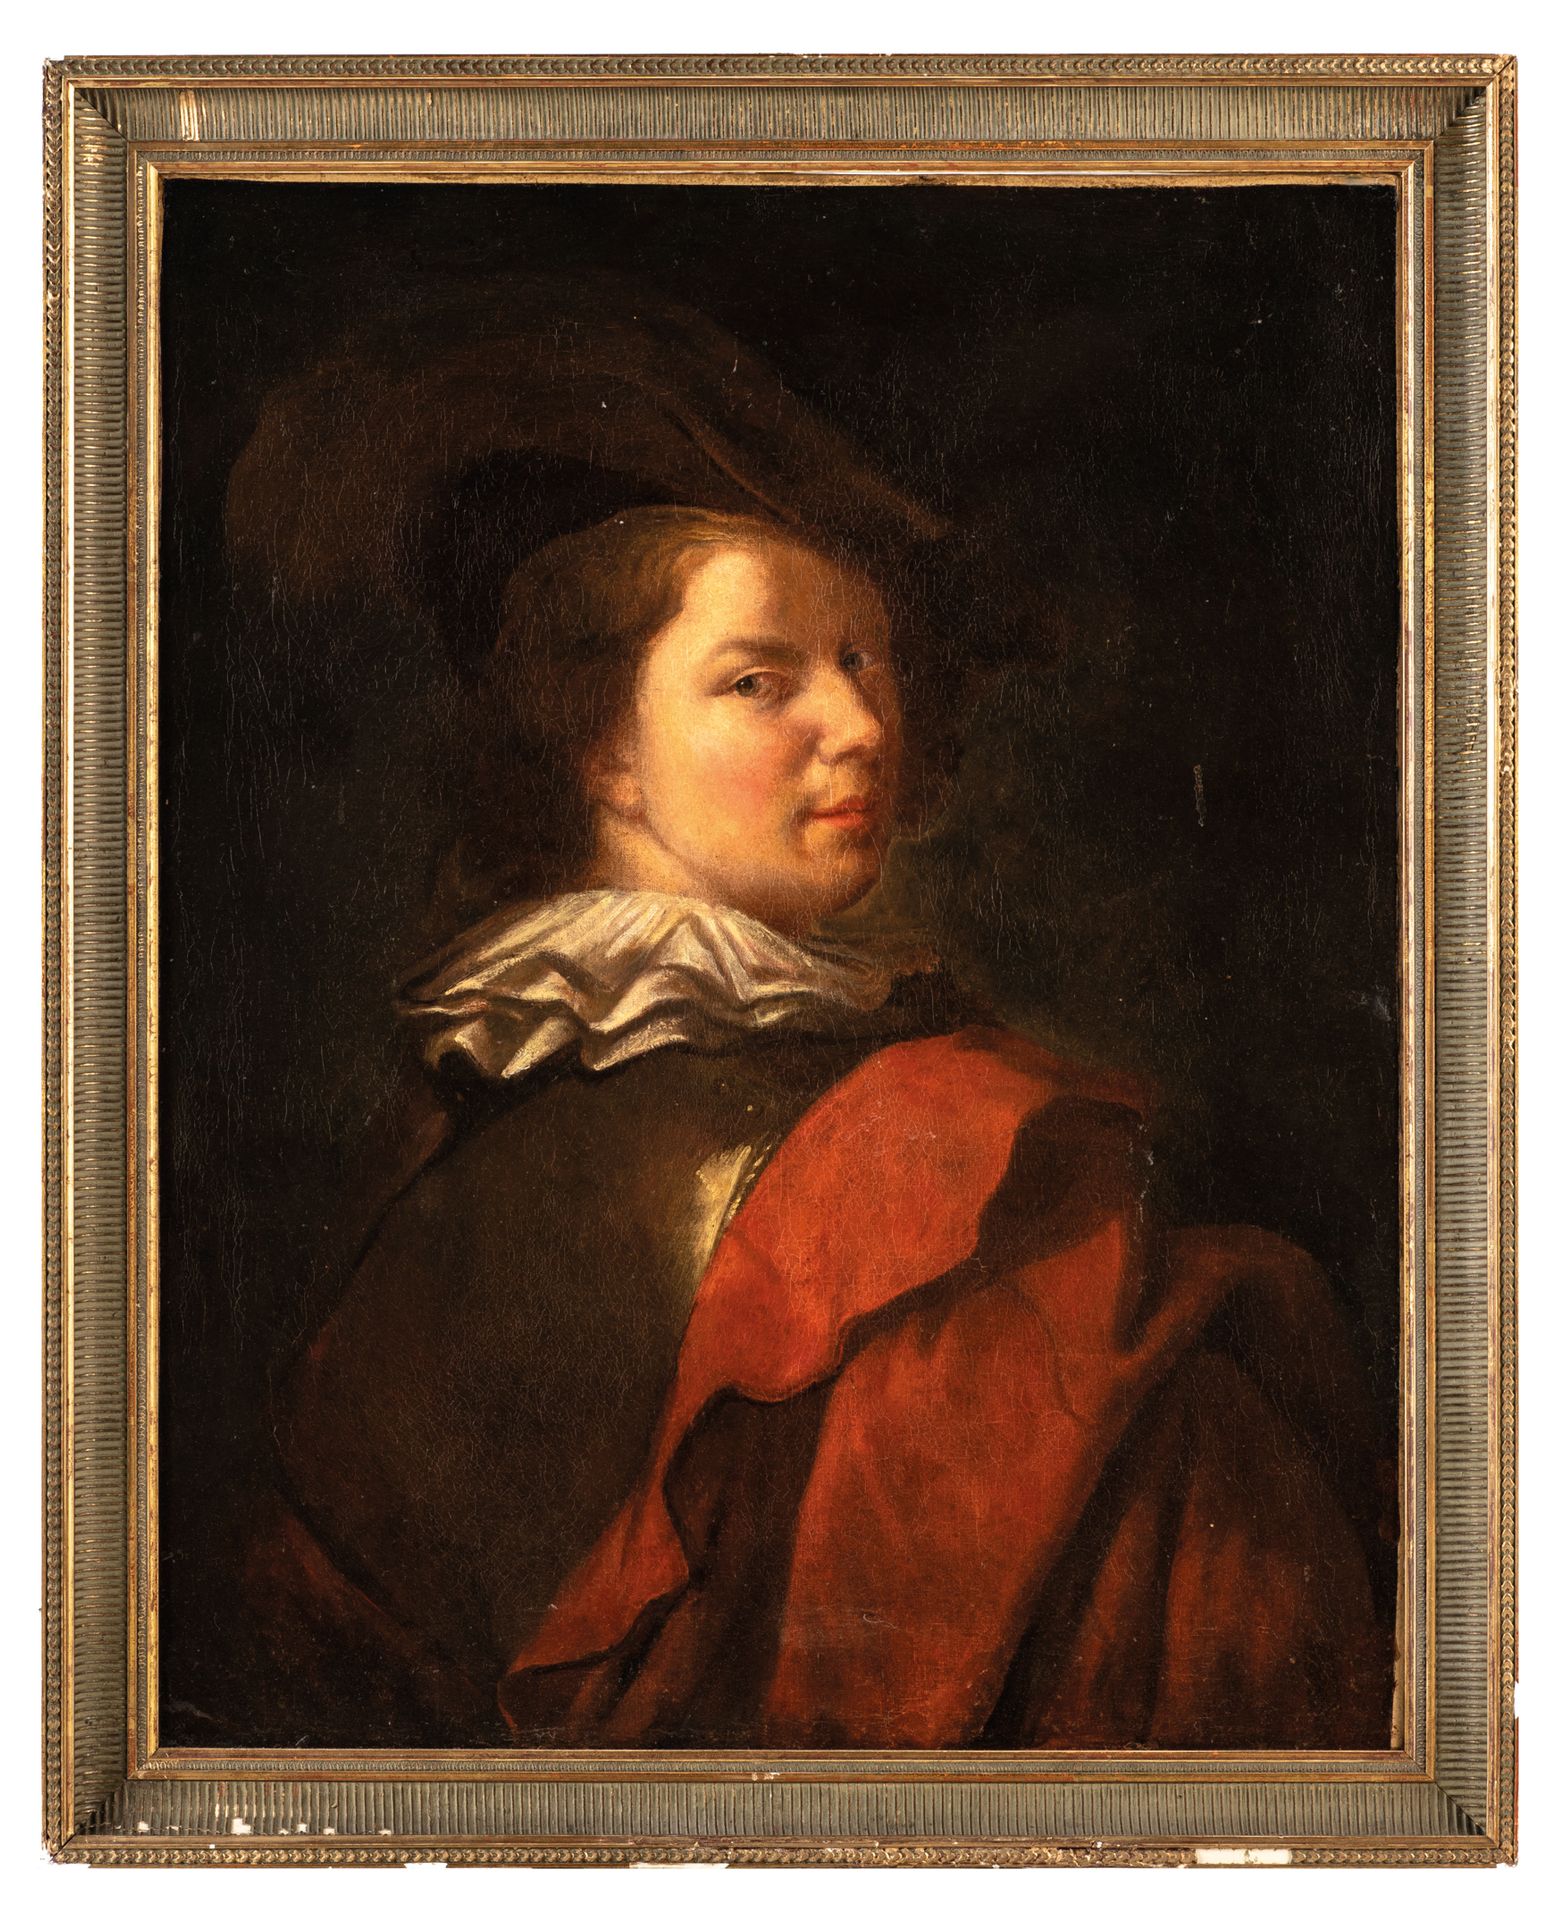 ALEXIS GRIMOU (Argenteuil, 1678 - París, 1733)
Retrato de un joven con capa roja&hellip;